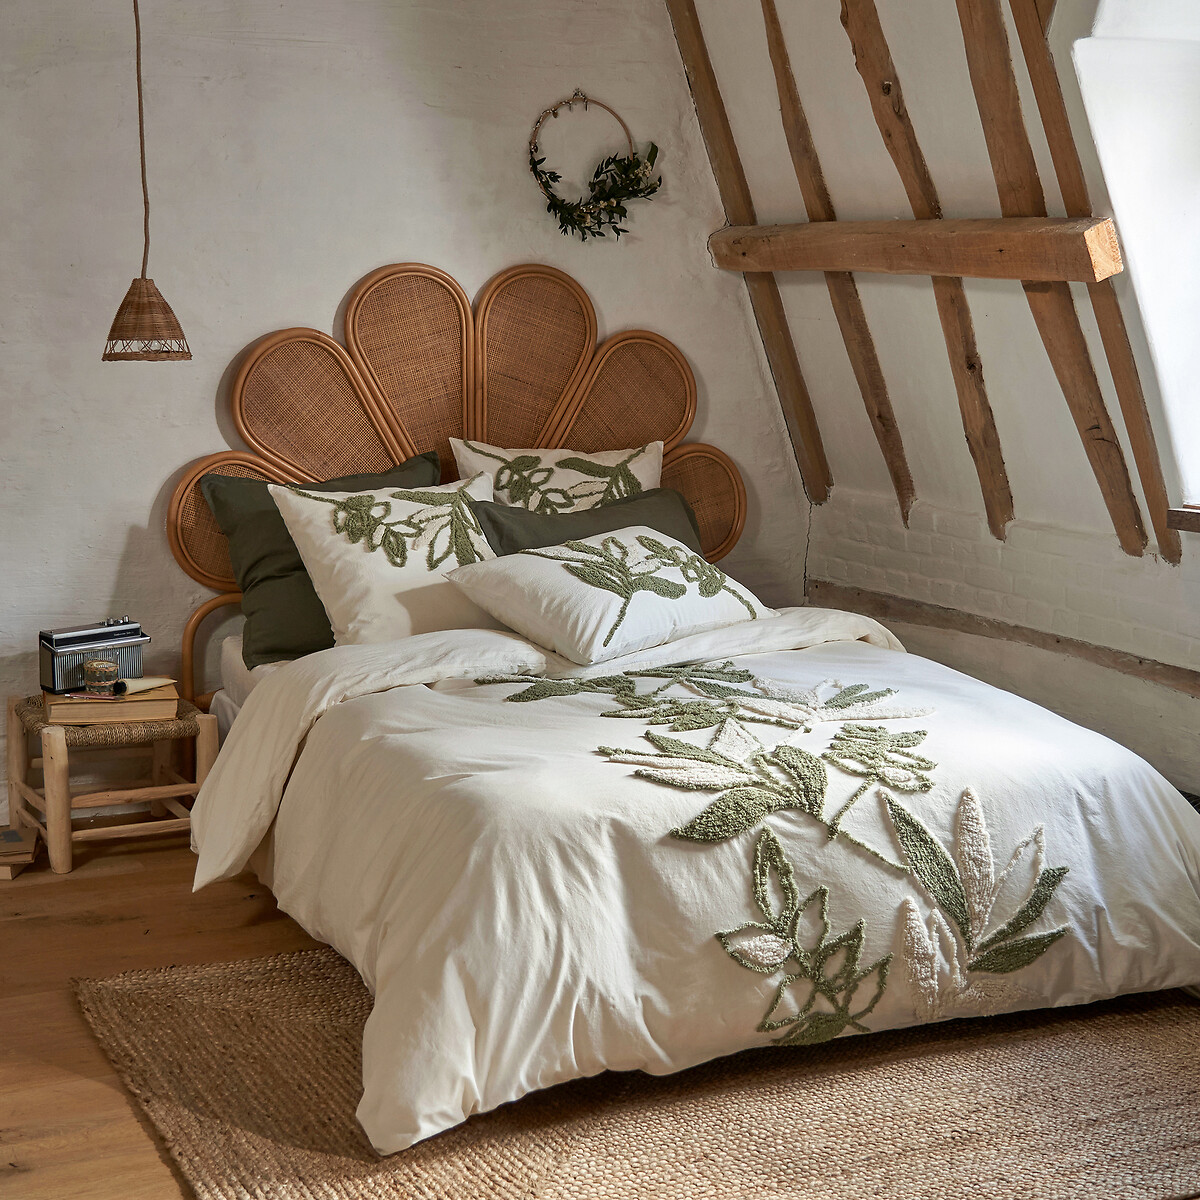 Ropa de cama de La Redoute para cada estilo de dormitorio